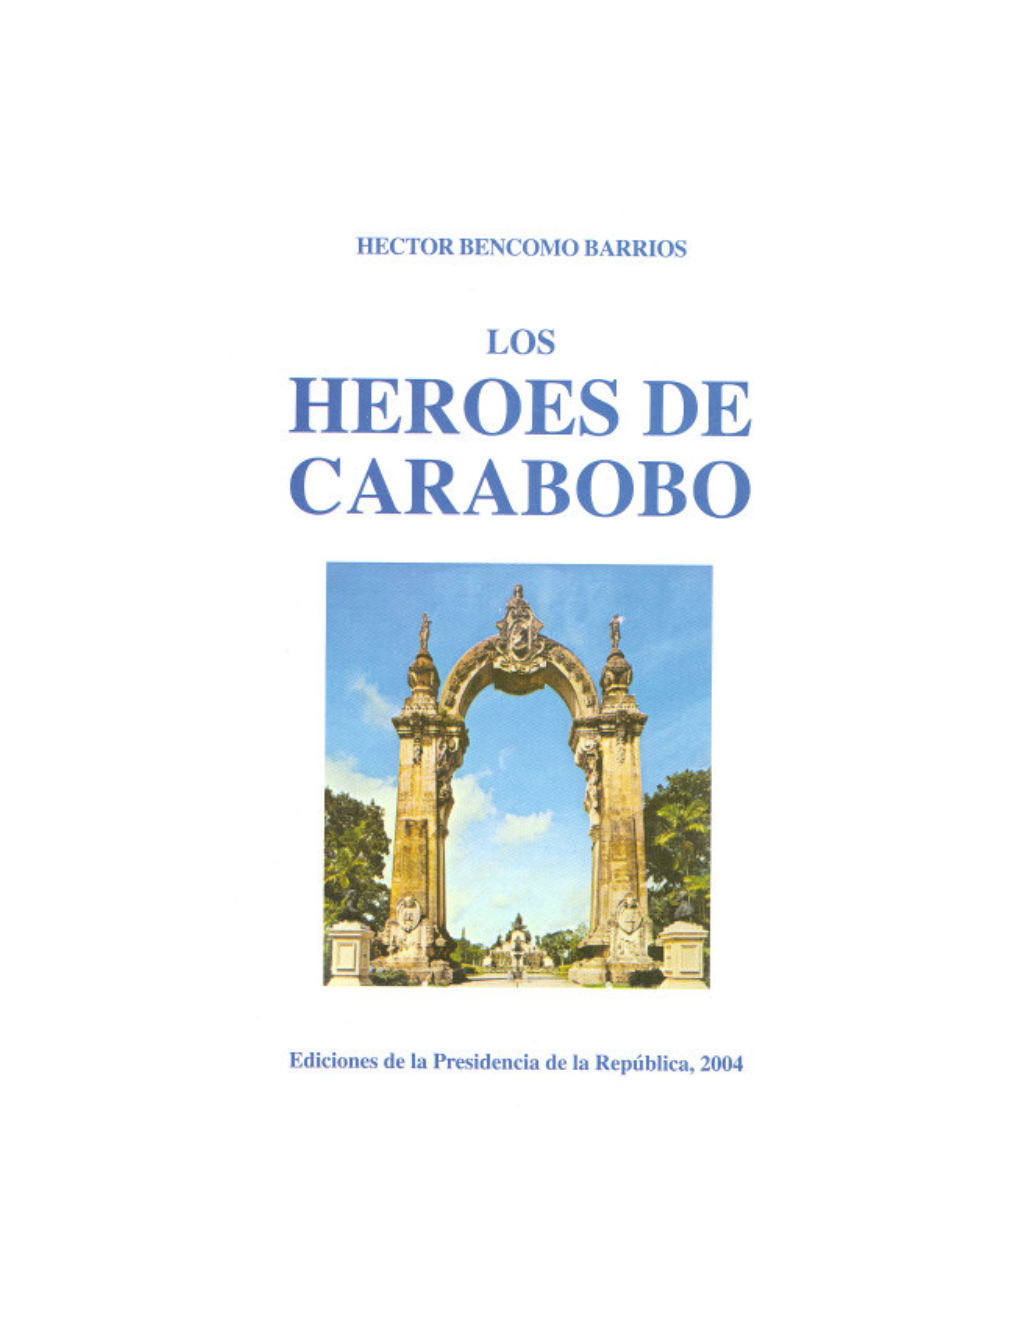 Héroes De Carabobo Ediciones De La Presidencia De La República Caracas - Venezuela, 2004 Depósito Legal: Lf8002004900384 ISBN: 980-03-0338-3